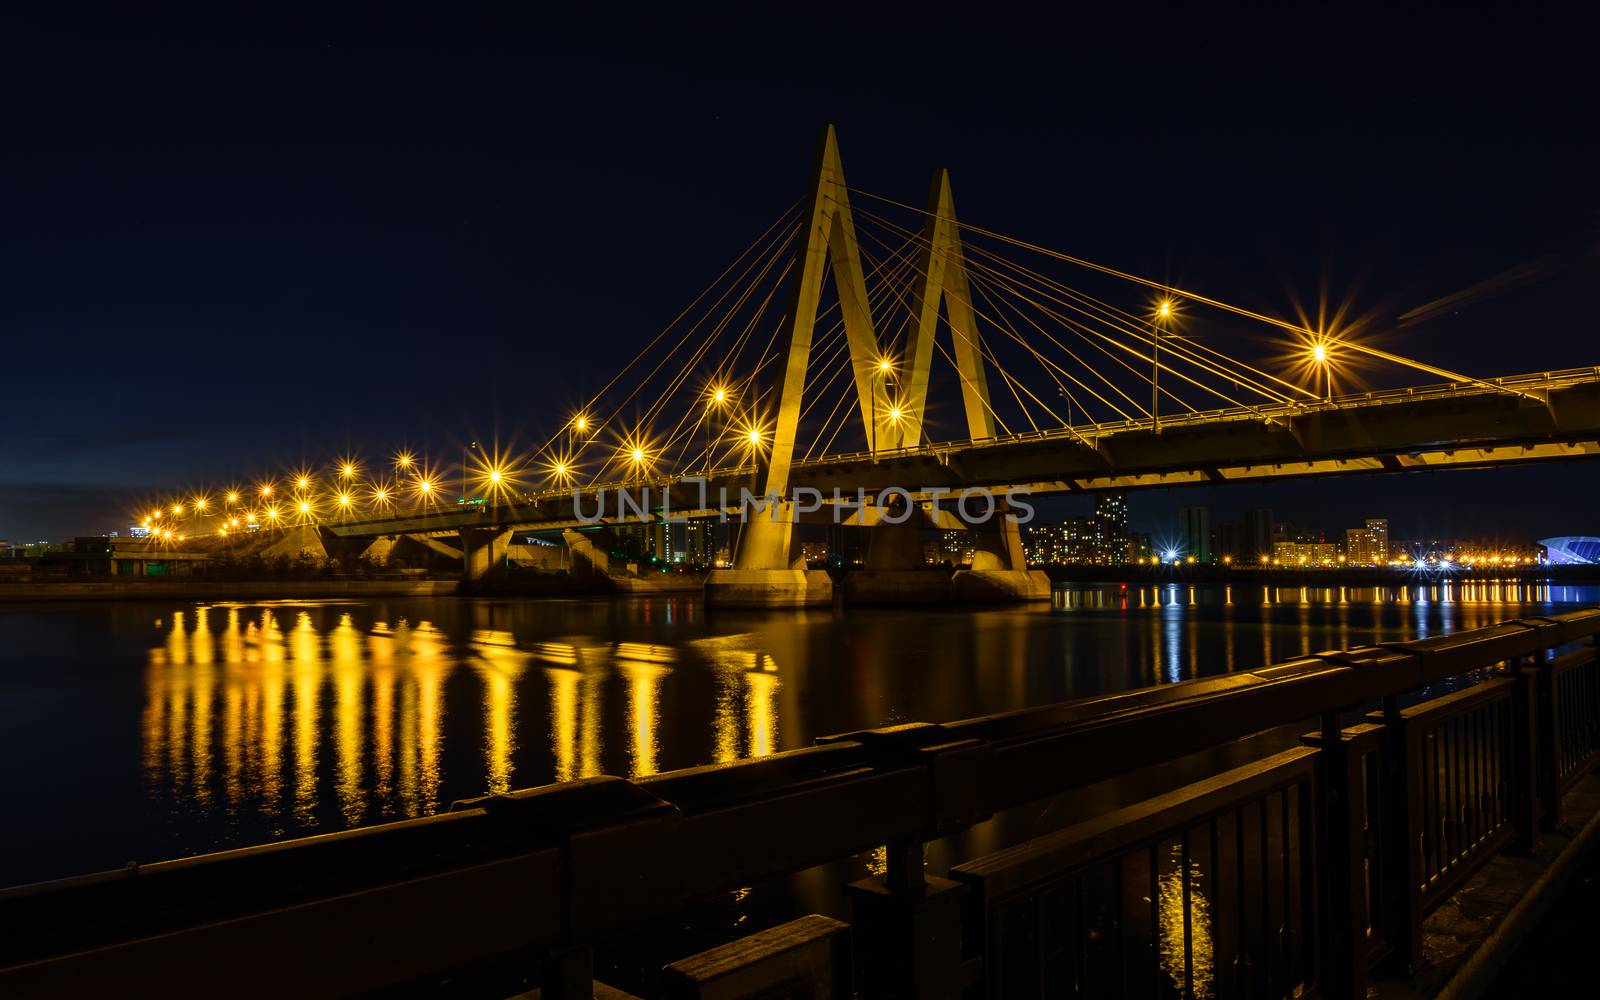 Night bridge across the river in Kazan by Seva_blsv